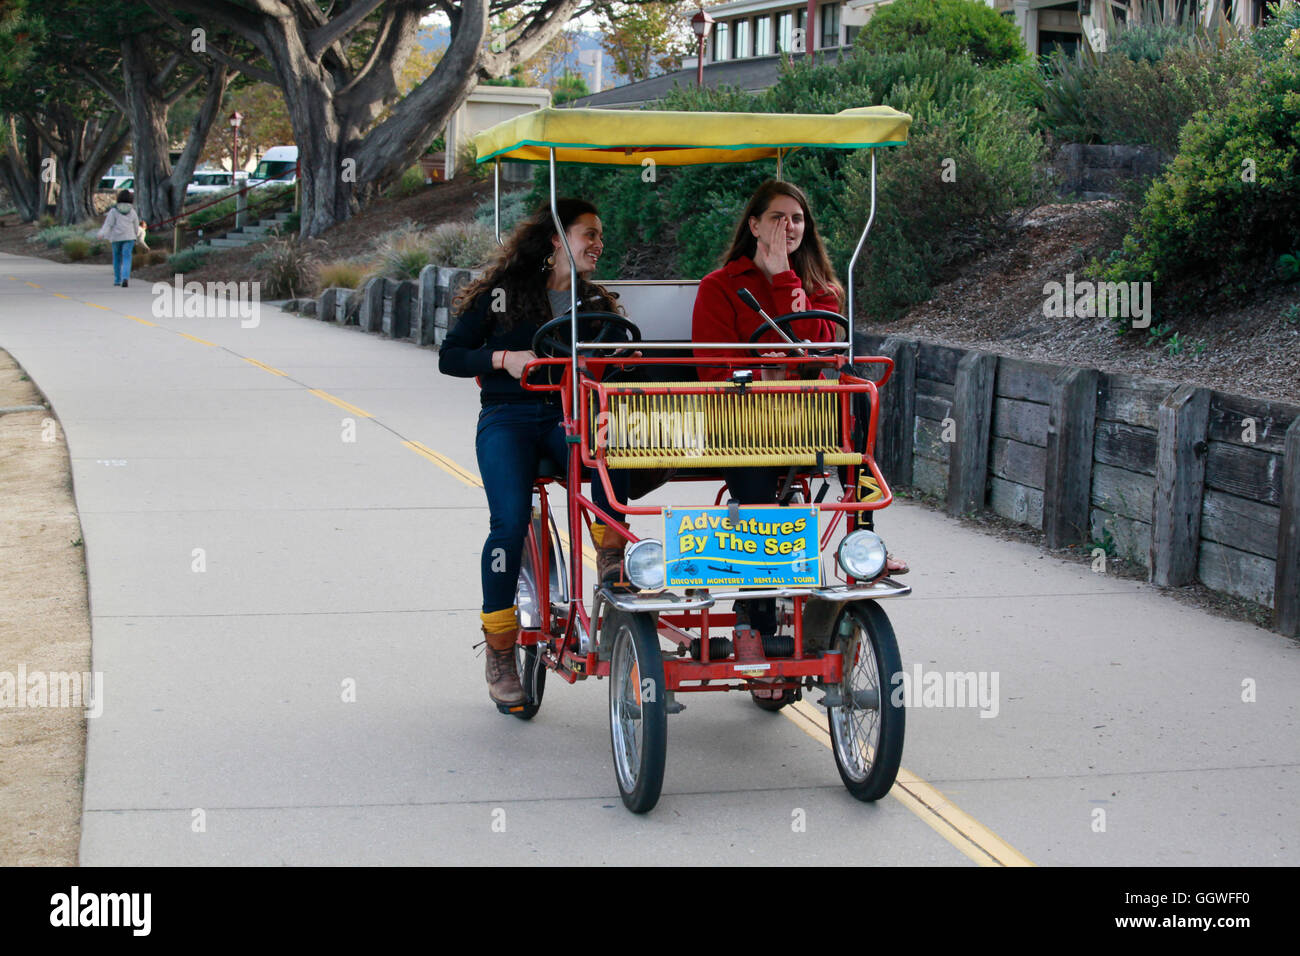 Fahrräder für zwei sind vermietet von ADVENTURES BY THE SEA und verwendet auf dem Radweg - MONTEREY, Kalifornien Stockfoto